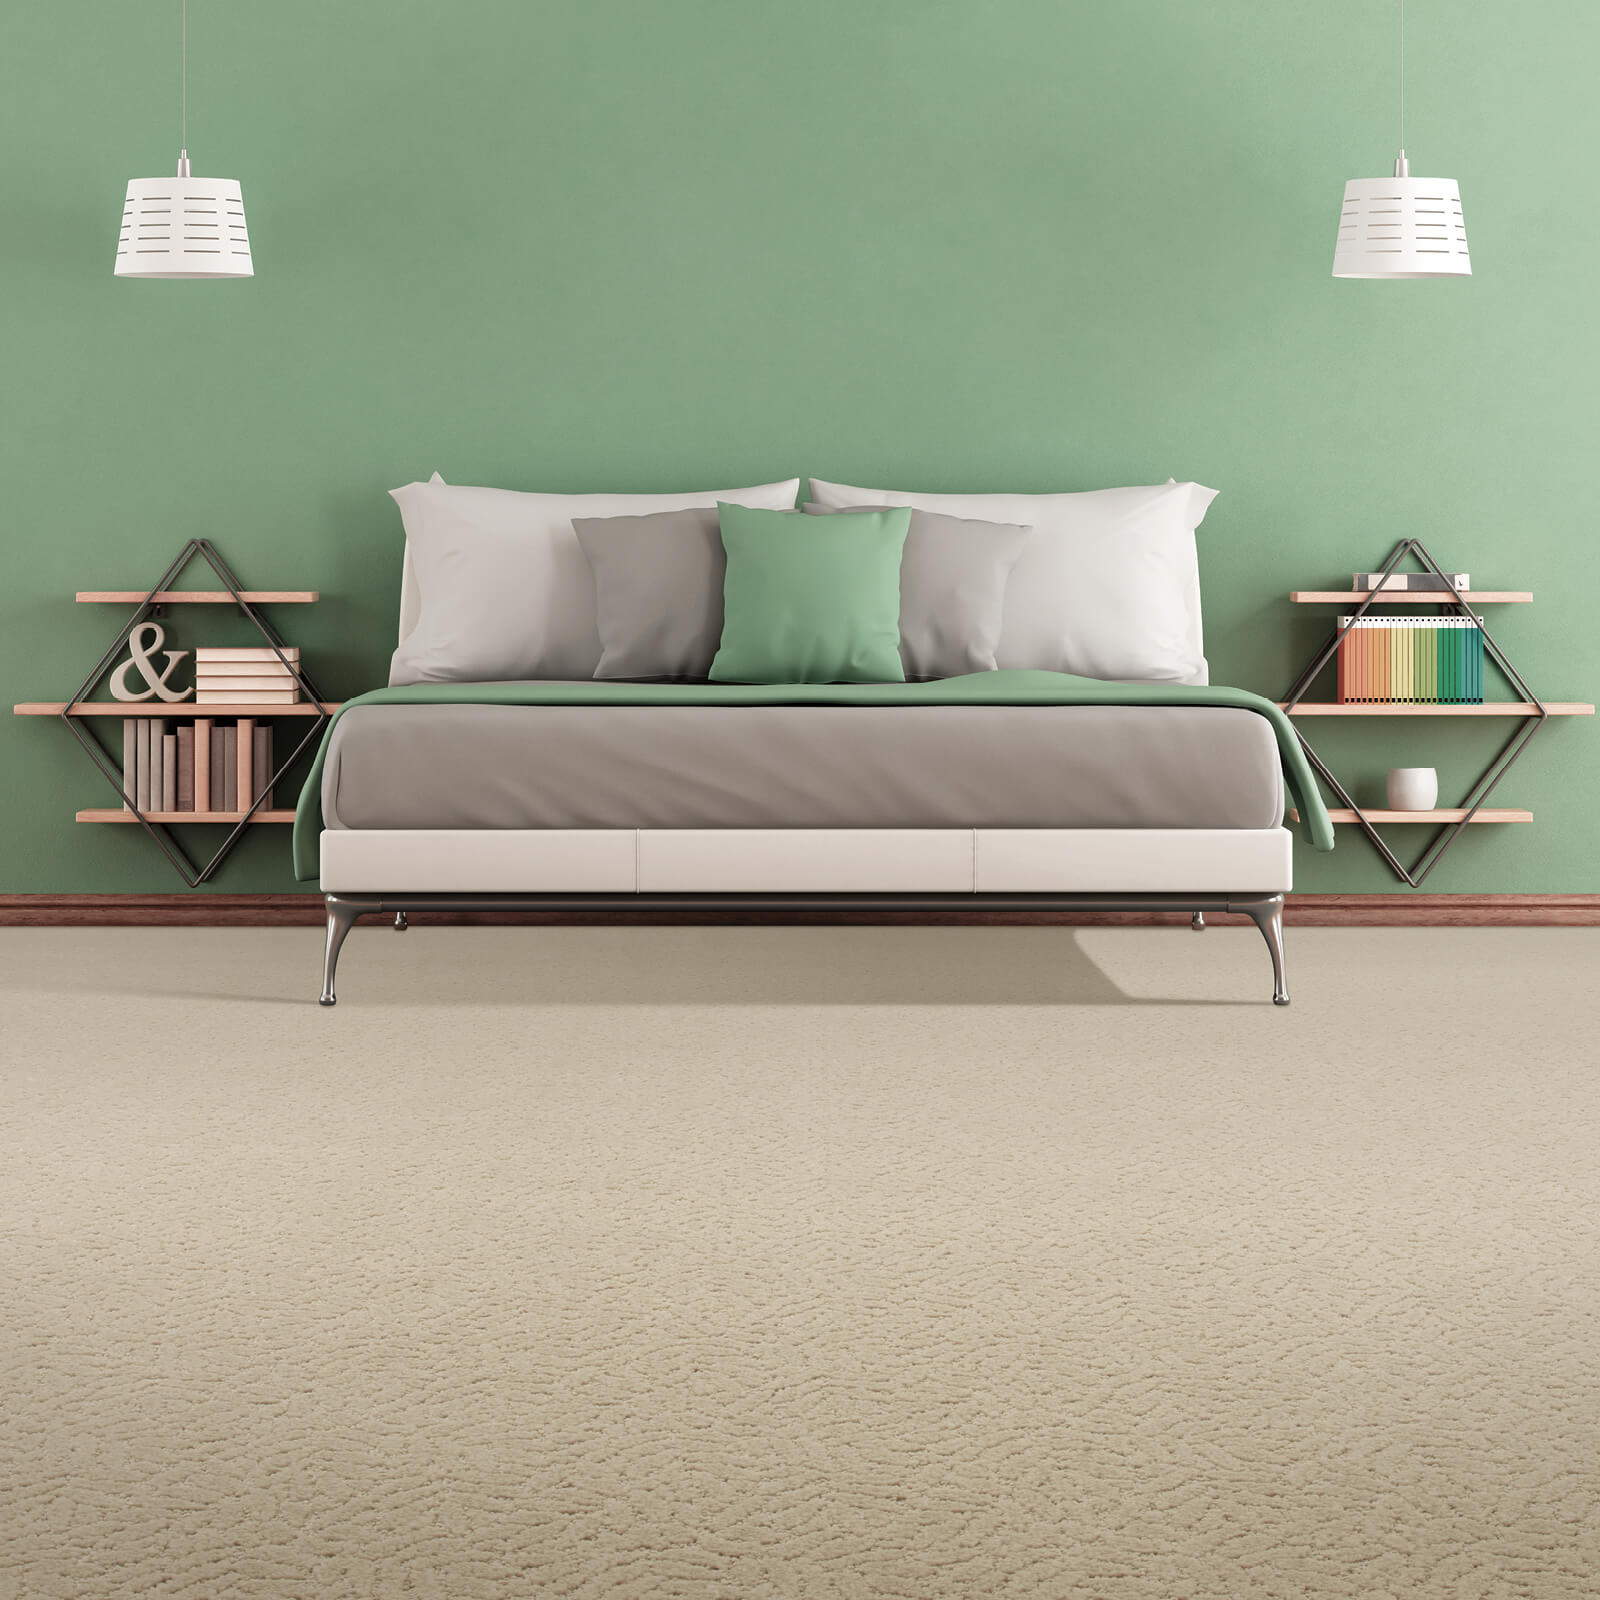 Natural Settings of carpet | Gilman Floors